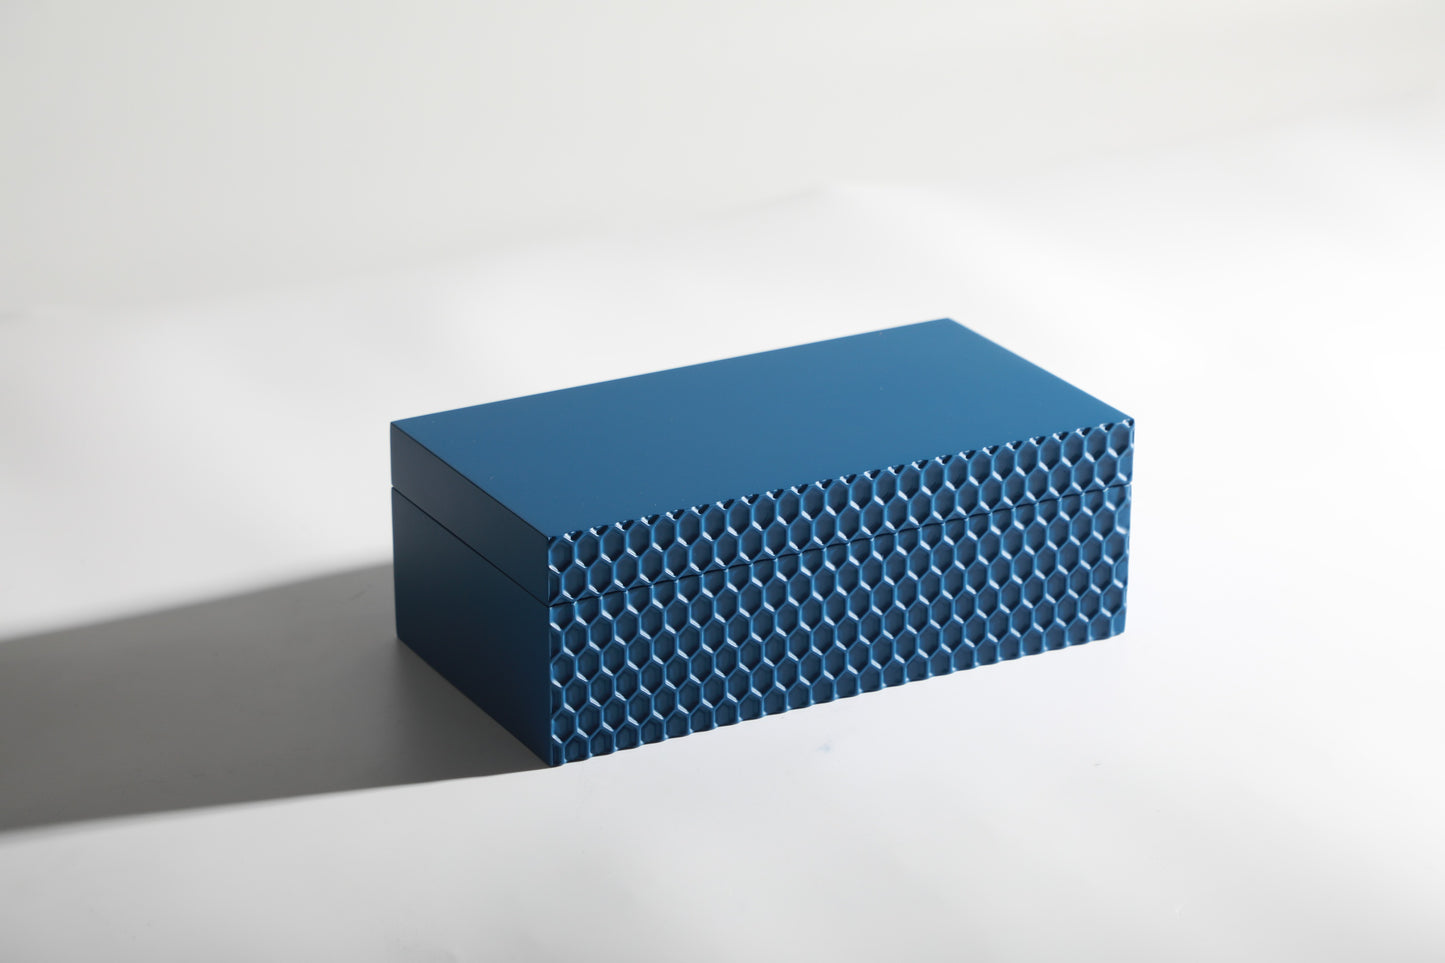 Diamond Blue Resin Storage Box